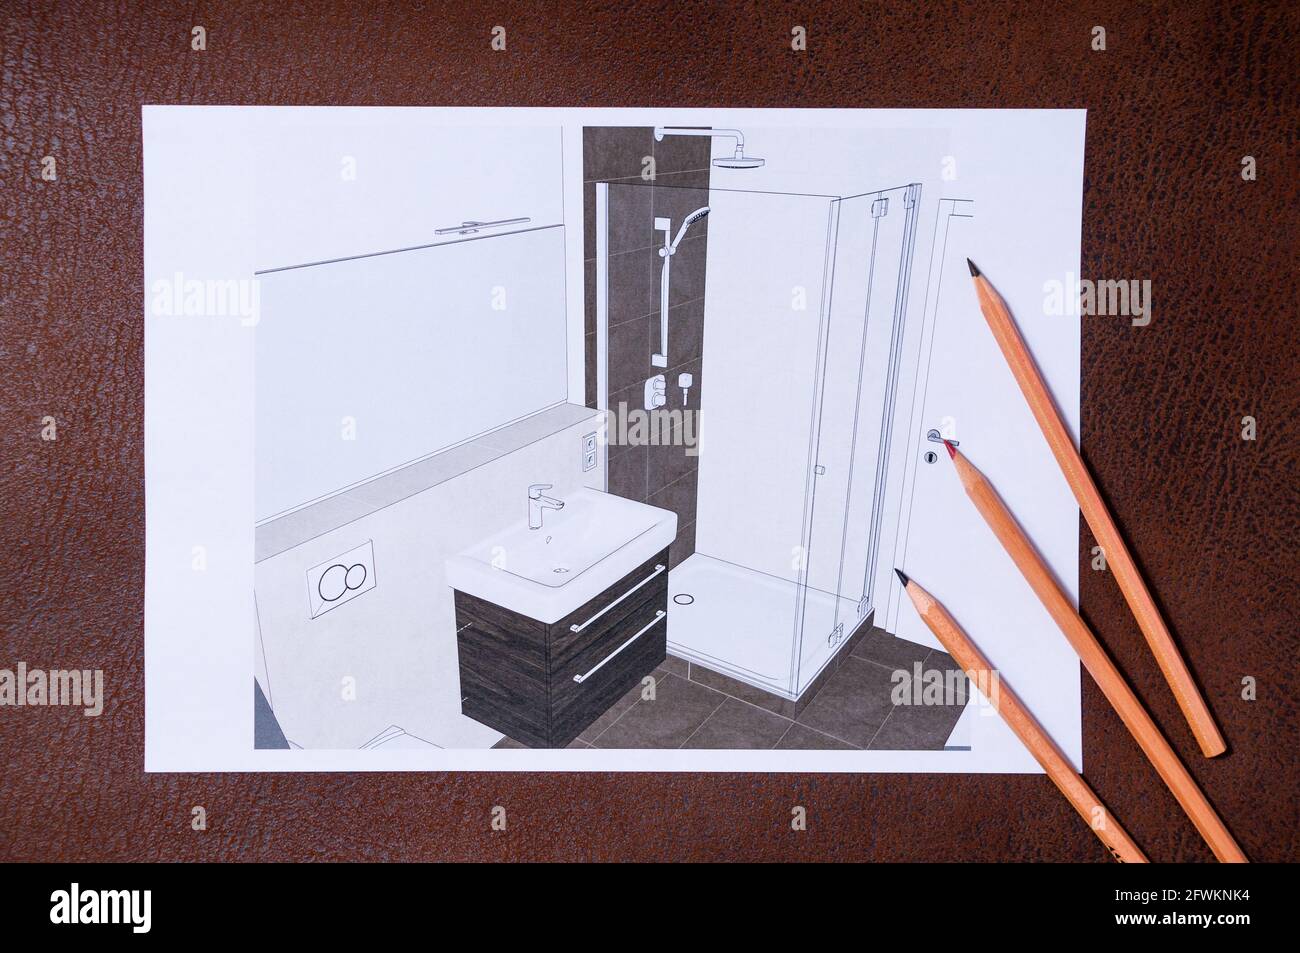 Planung eines Badezimmers auf einer braunen Oberfläche. Es sind 3 Stifte darauf. Blick auf das Badezimmer von einer erhöhten Position Stockfoto